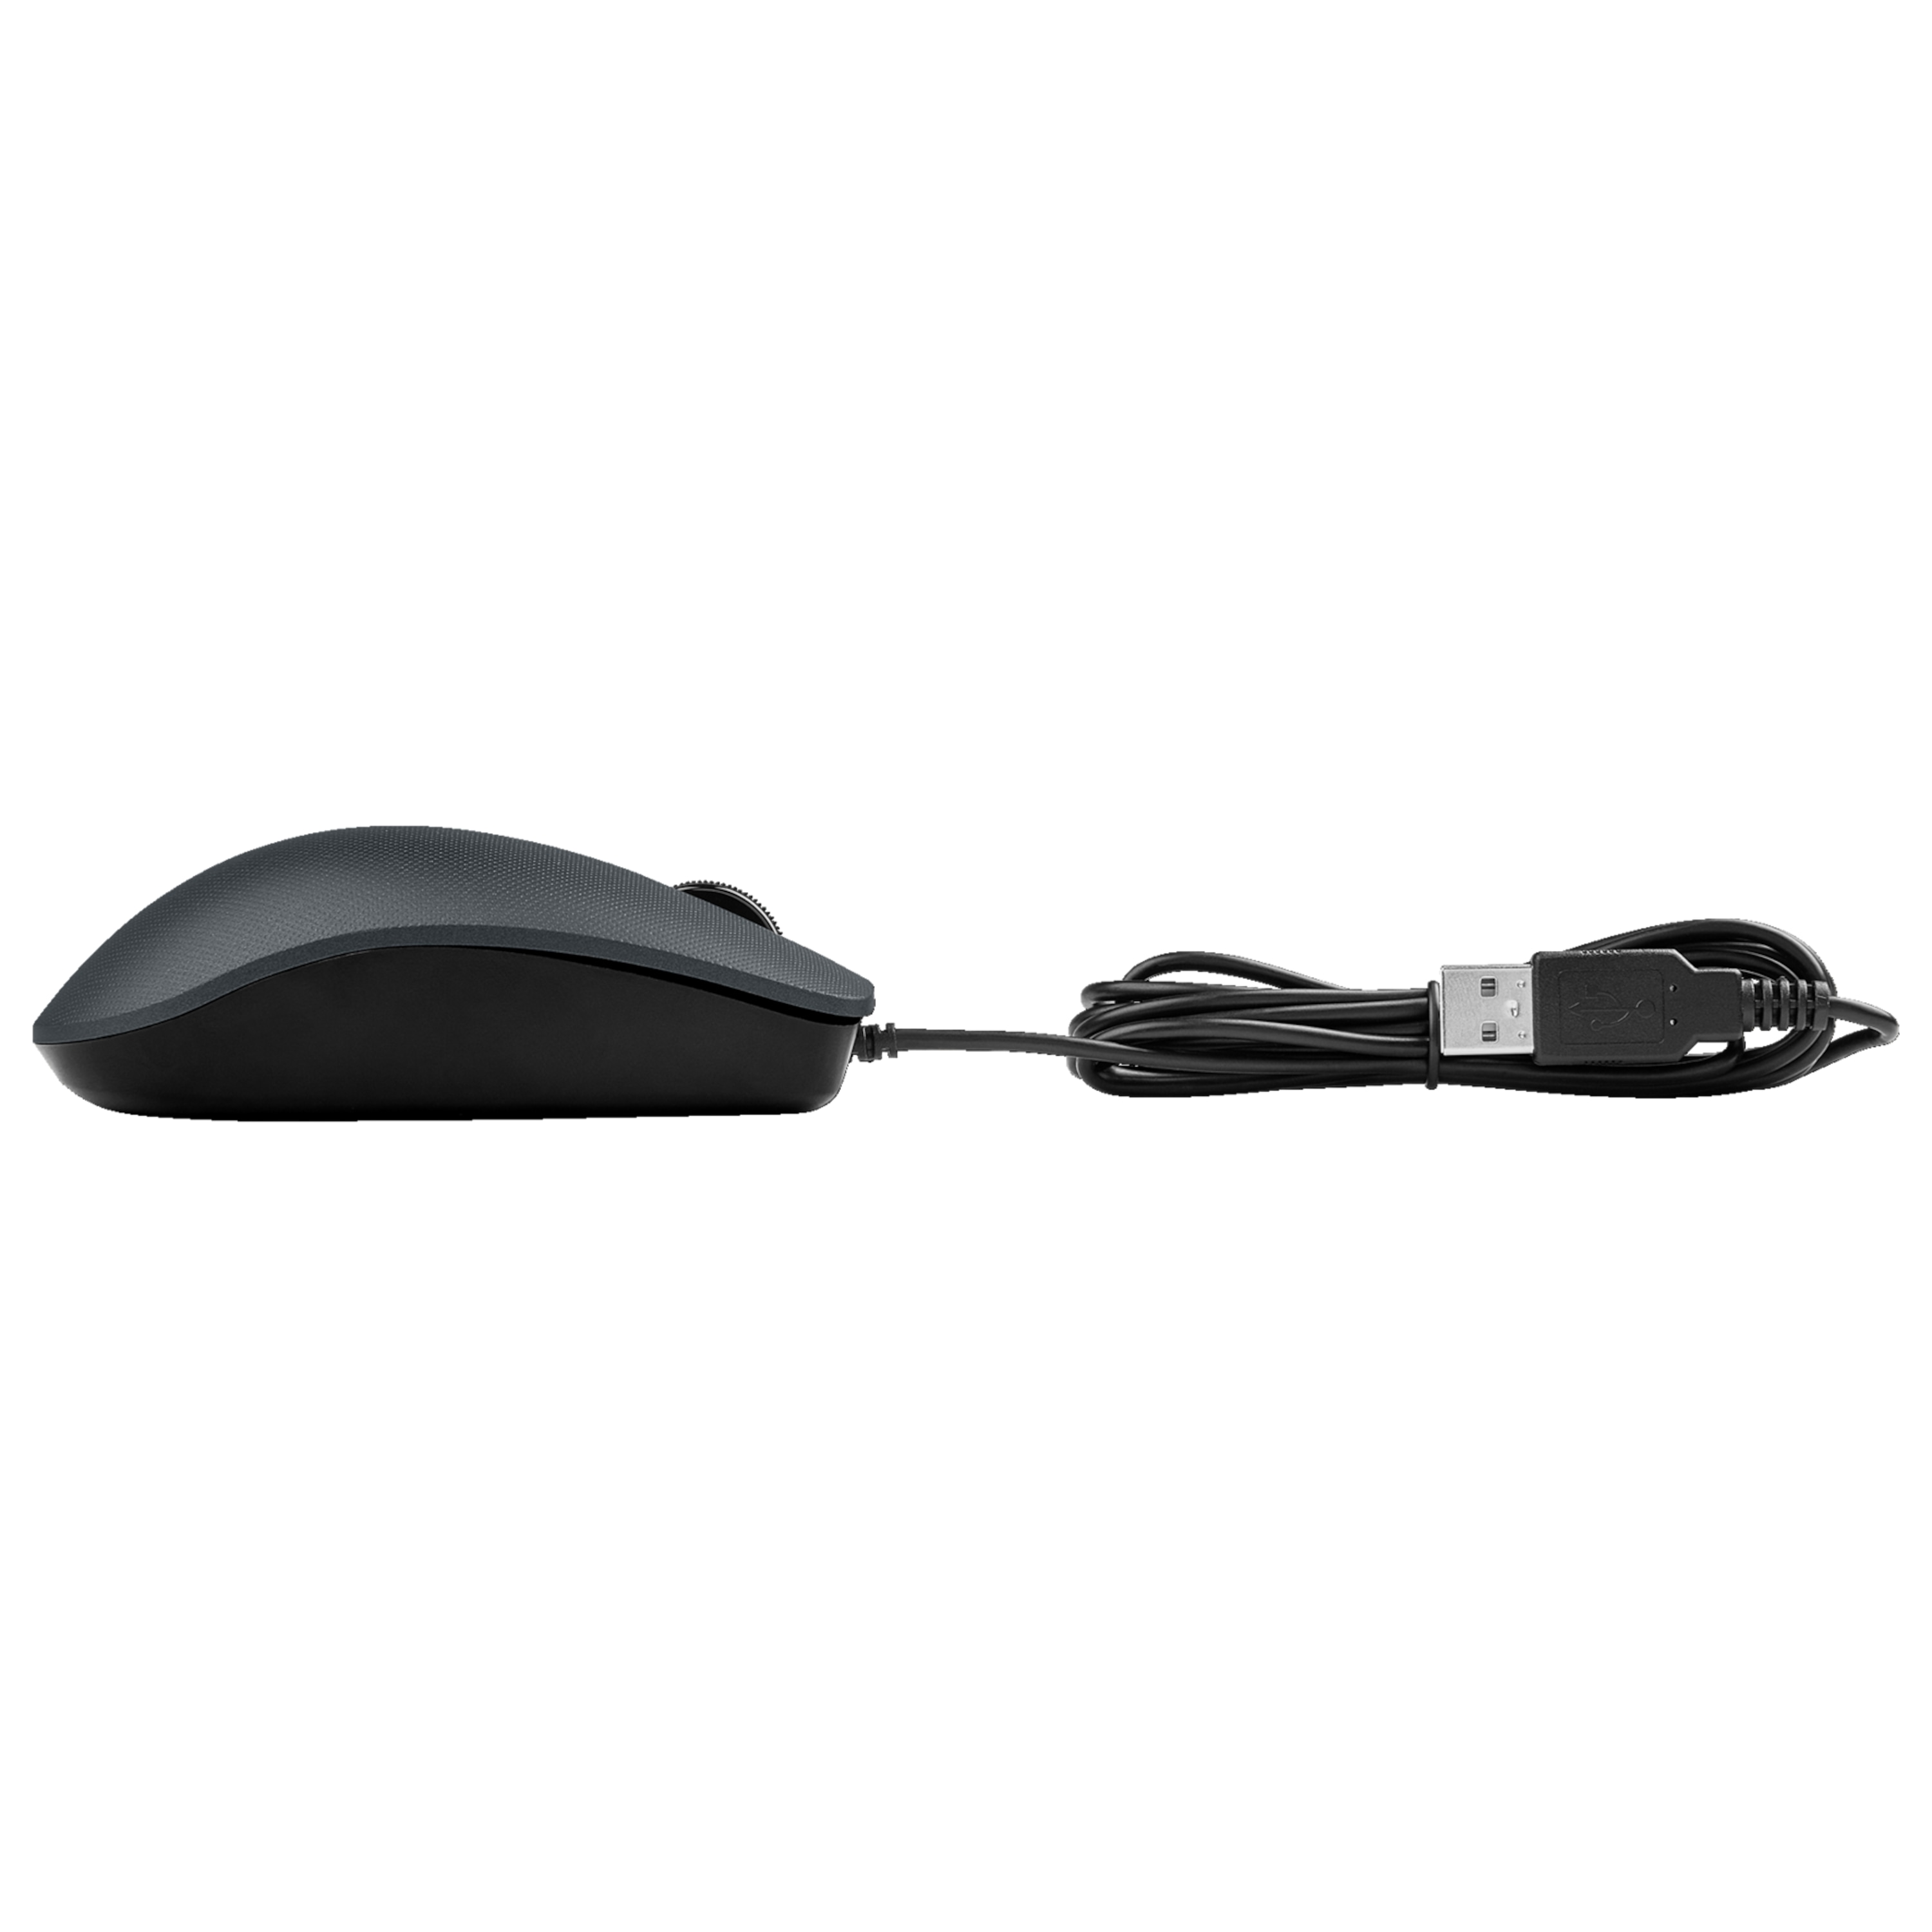 MEDION® MEDION® MA105U USB-Maus, Scrollrad, ergonomische Maus für Rechts- und Linkshänder